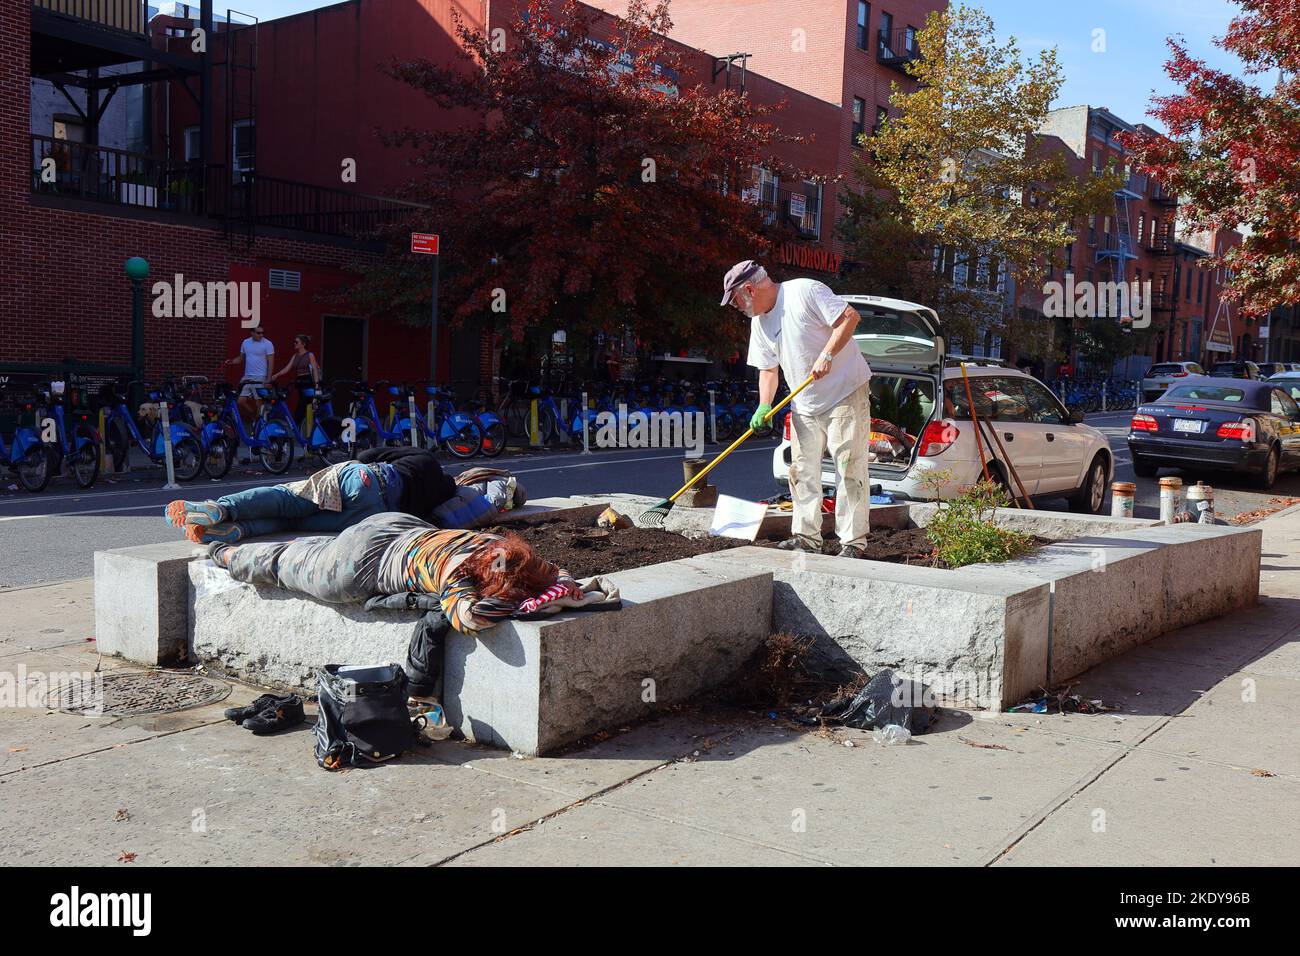 Un giardiniere tende ad una piantatrice con diverse persone che dormono su di essa, su una strada a Cobble Hill, Brooklyn, New York. Foto Stock